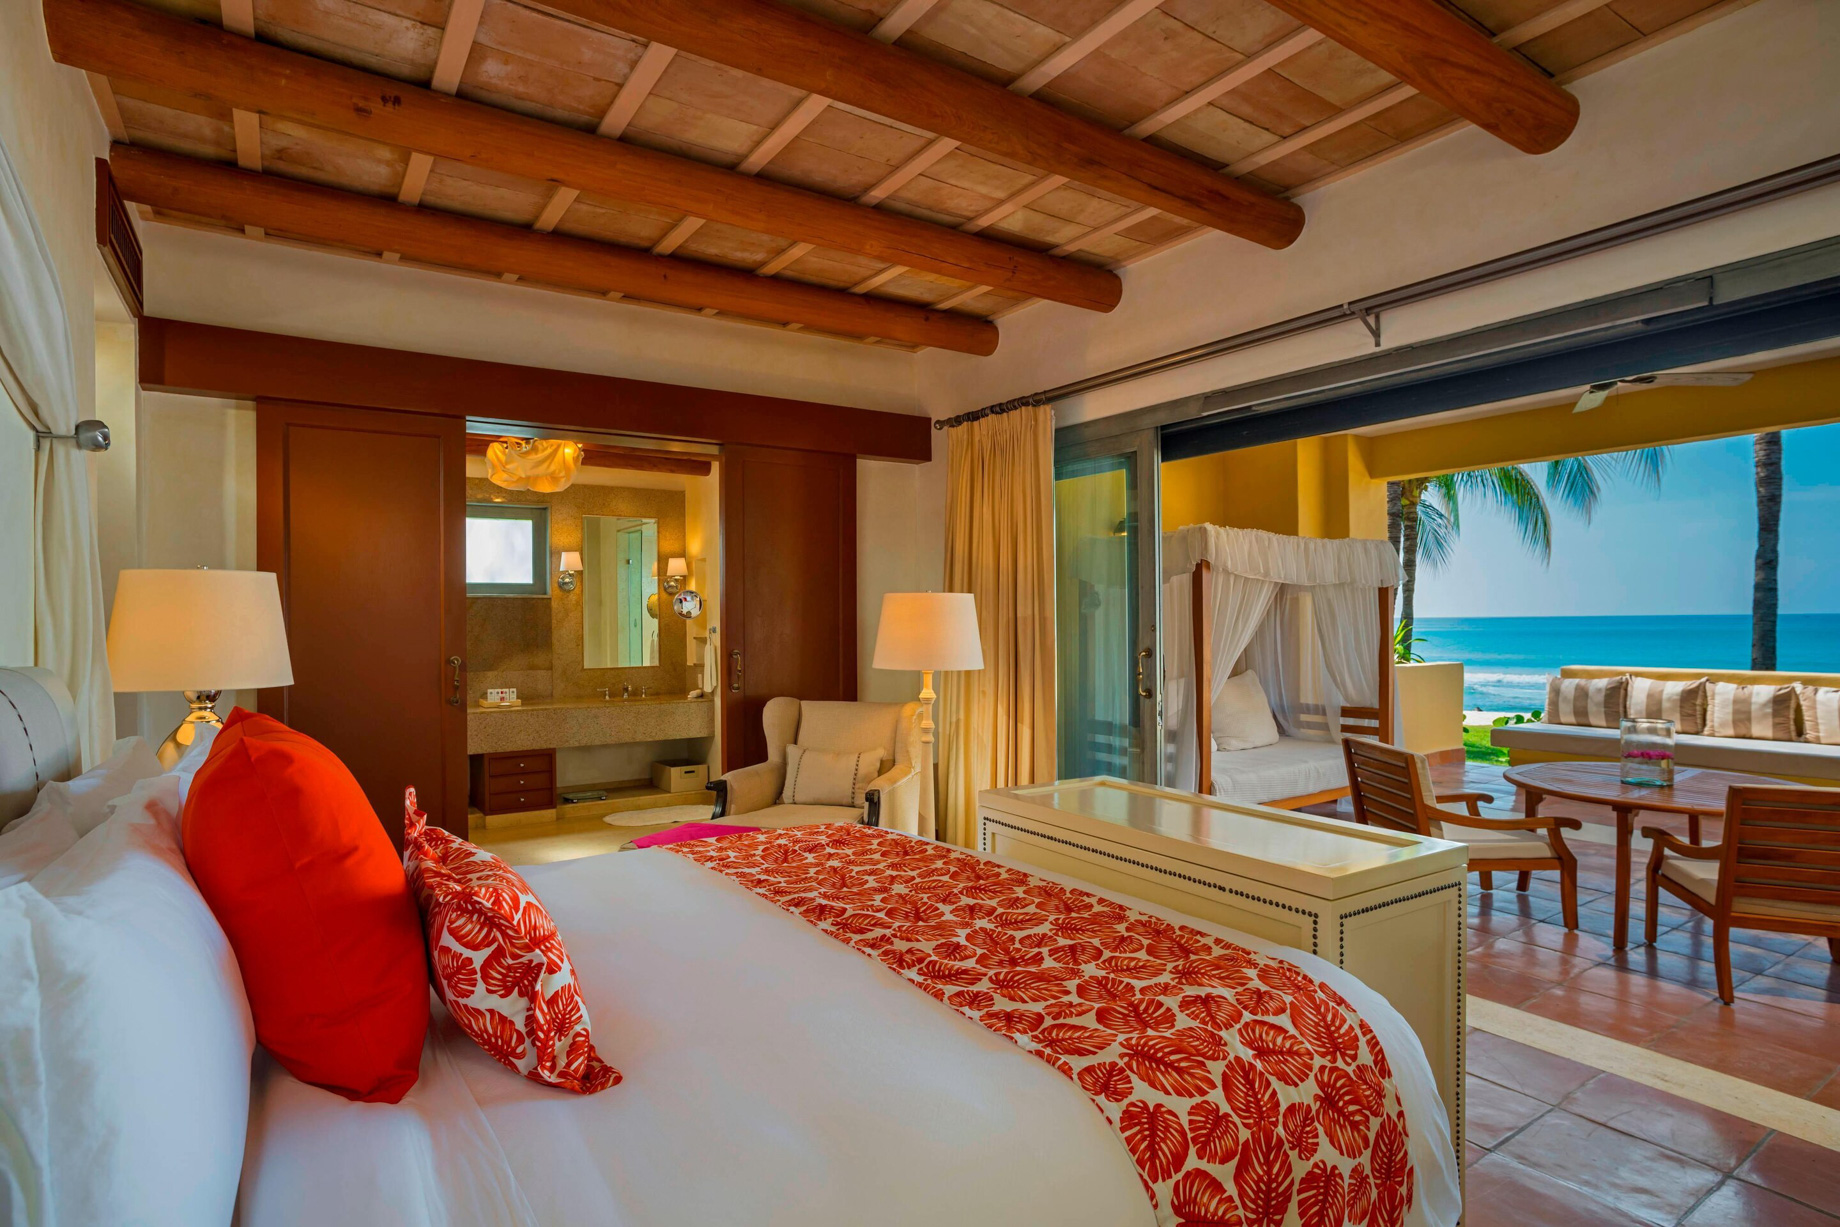 The St. Regis Punta Mita Resort – Nayarit, Mexico – 3 Bedroom Villa Master Bedroom